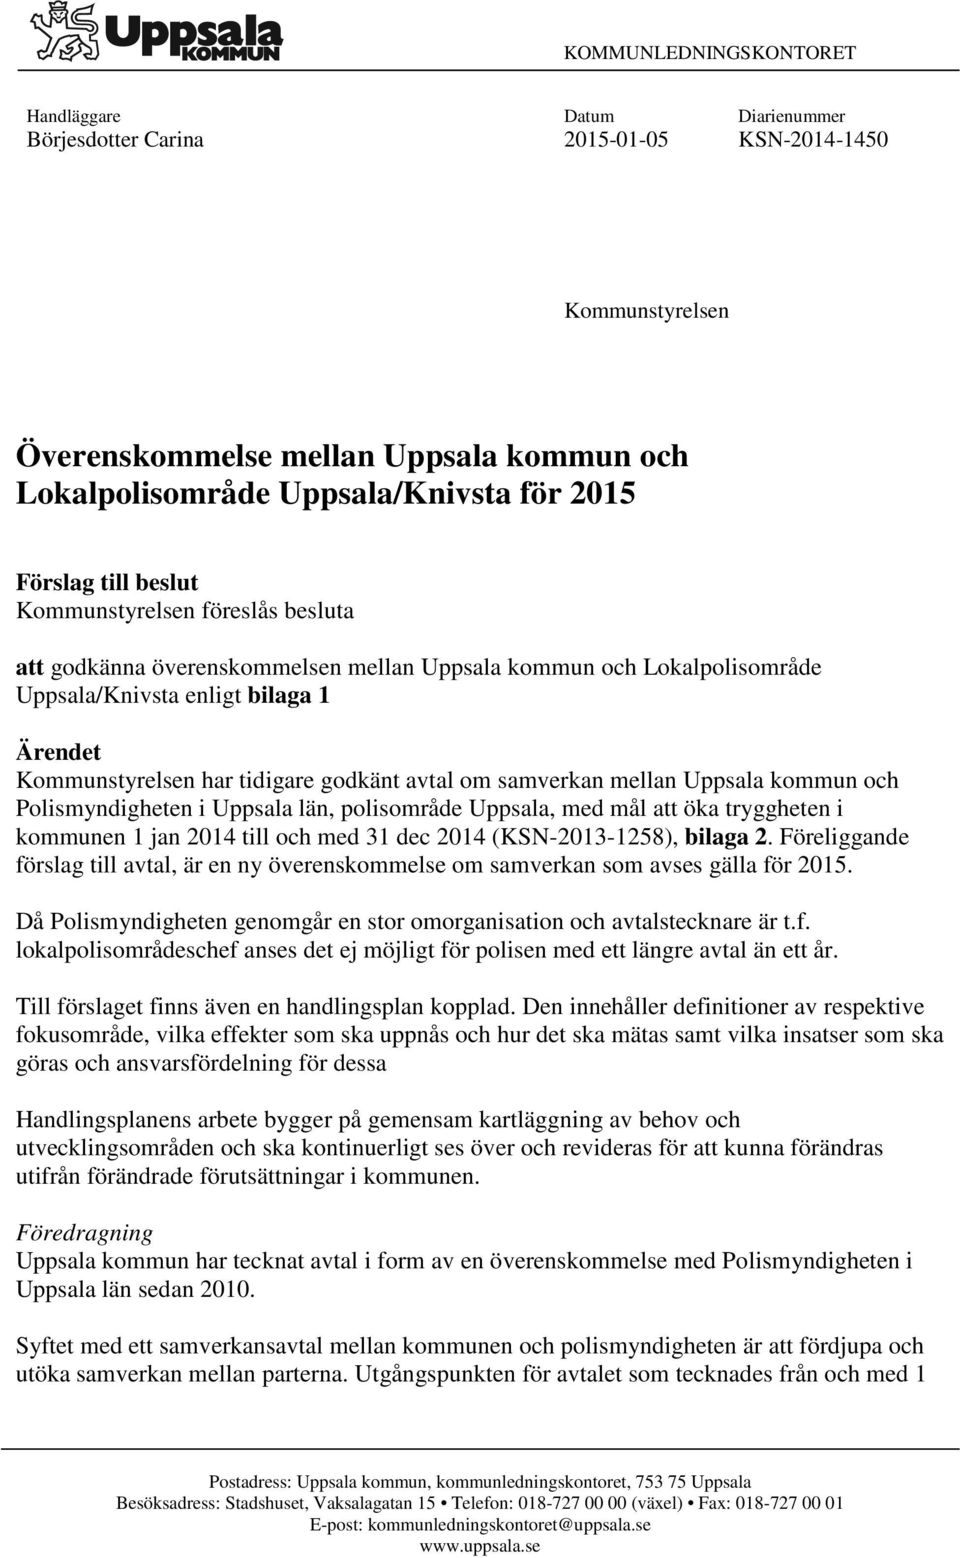 godkänt avtal om samverkan mellan Uppsala kommun och Polismyndigheten i Uppsala län, polisområde Uppsala, med mål att öka tryggheten i kommunen 1 jan 2014 till och med 31 dec 2014 (KSN-2013-1258),